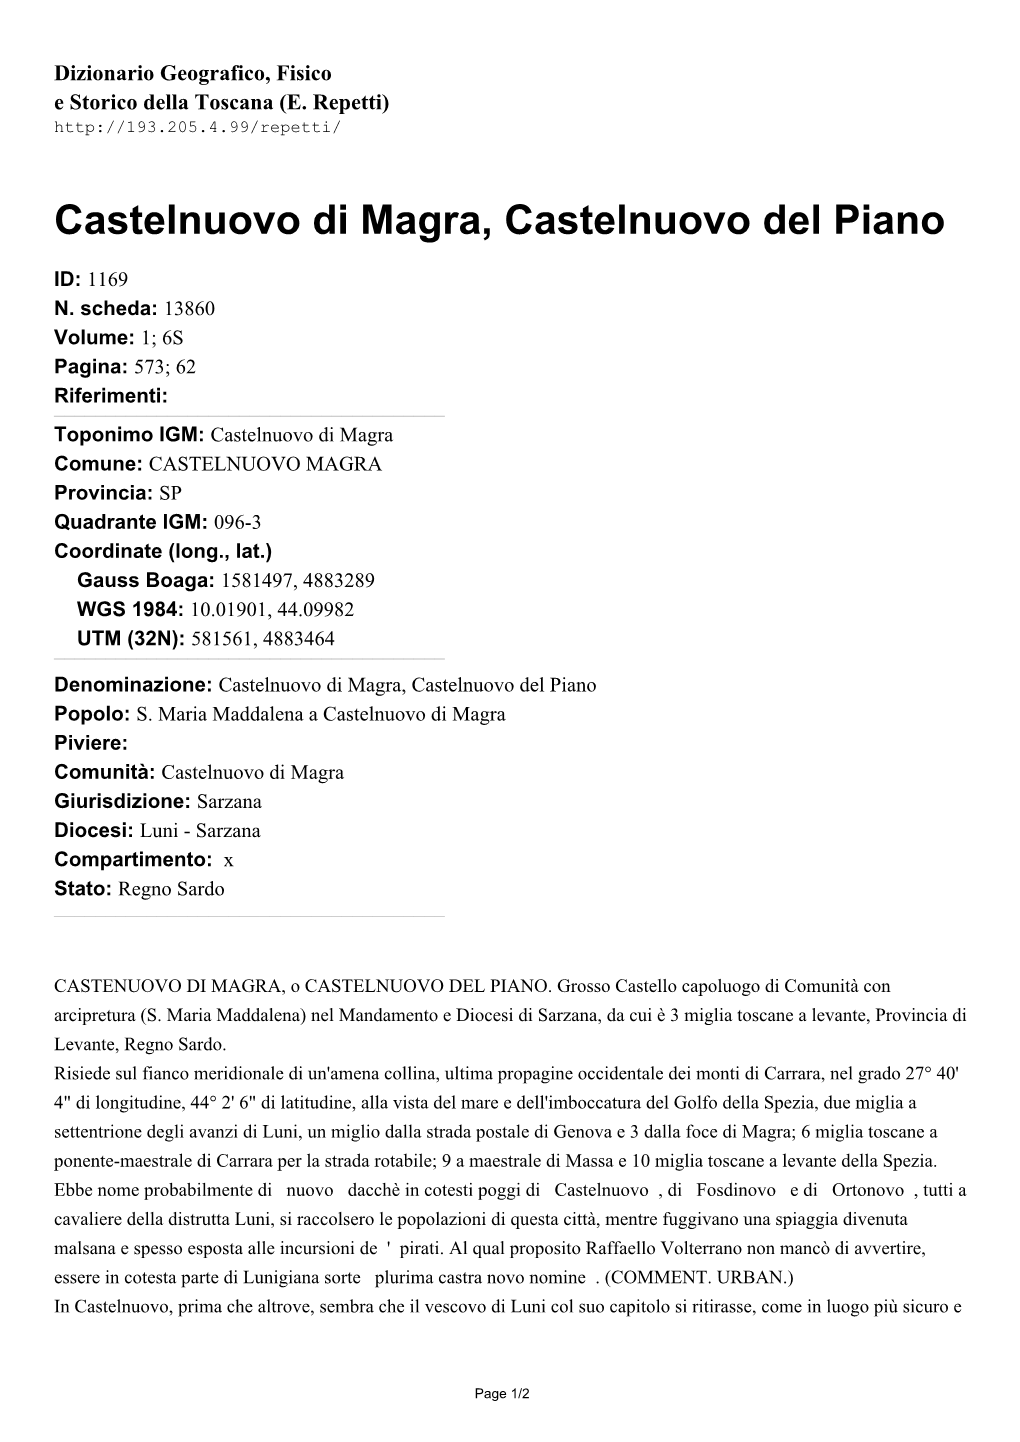 Castelnuovo Di Magra, Castelnuovo Del Piano